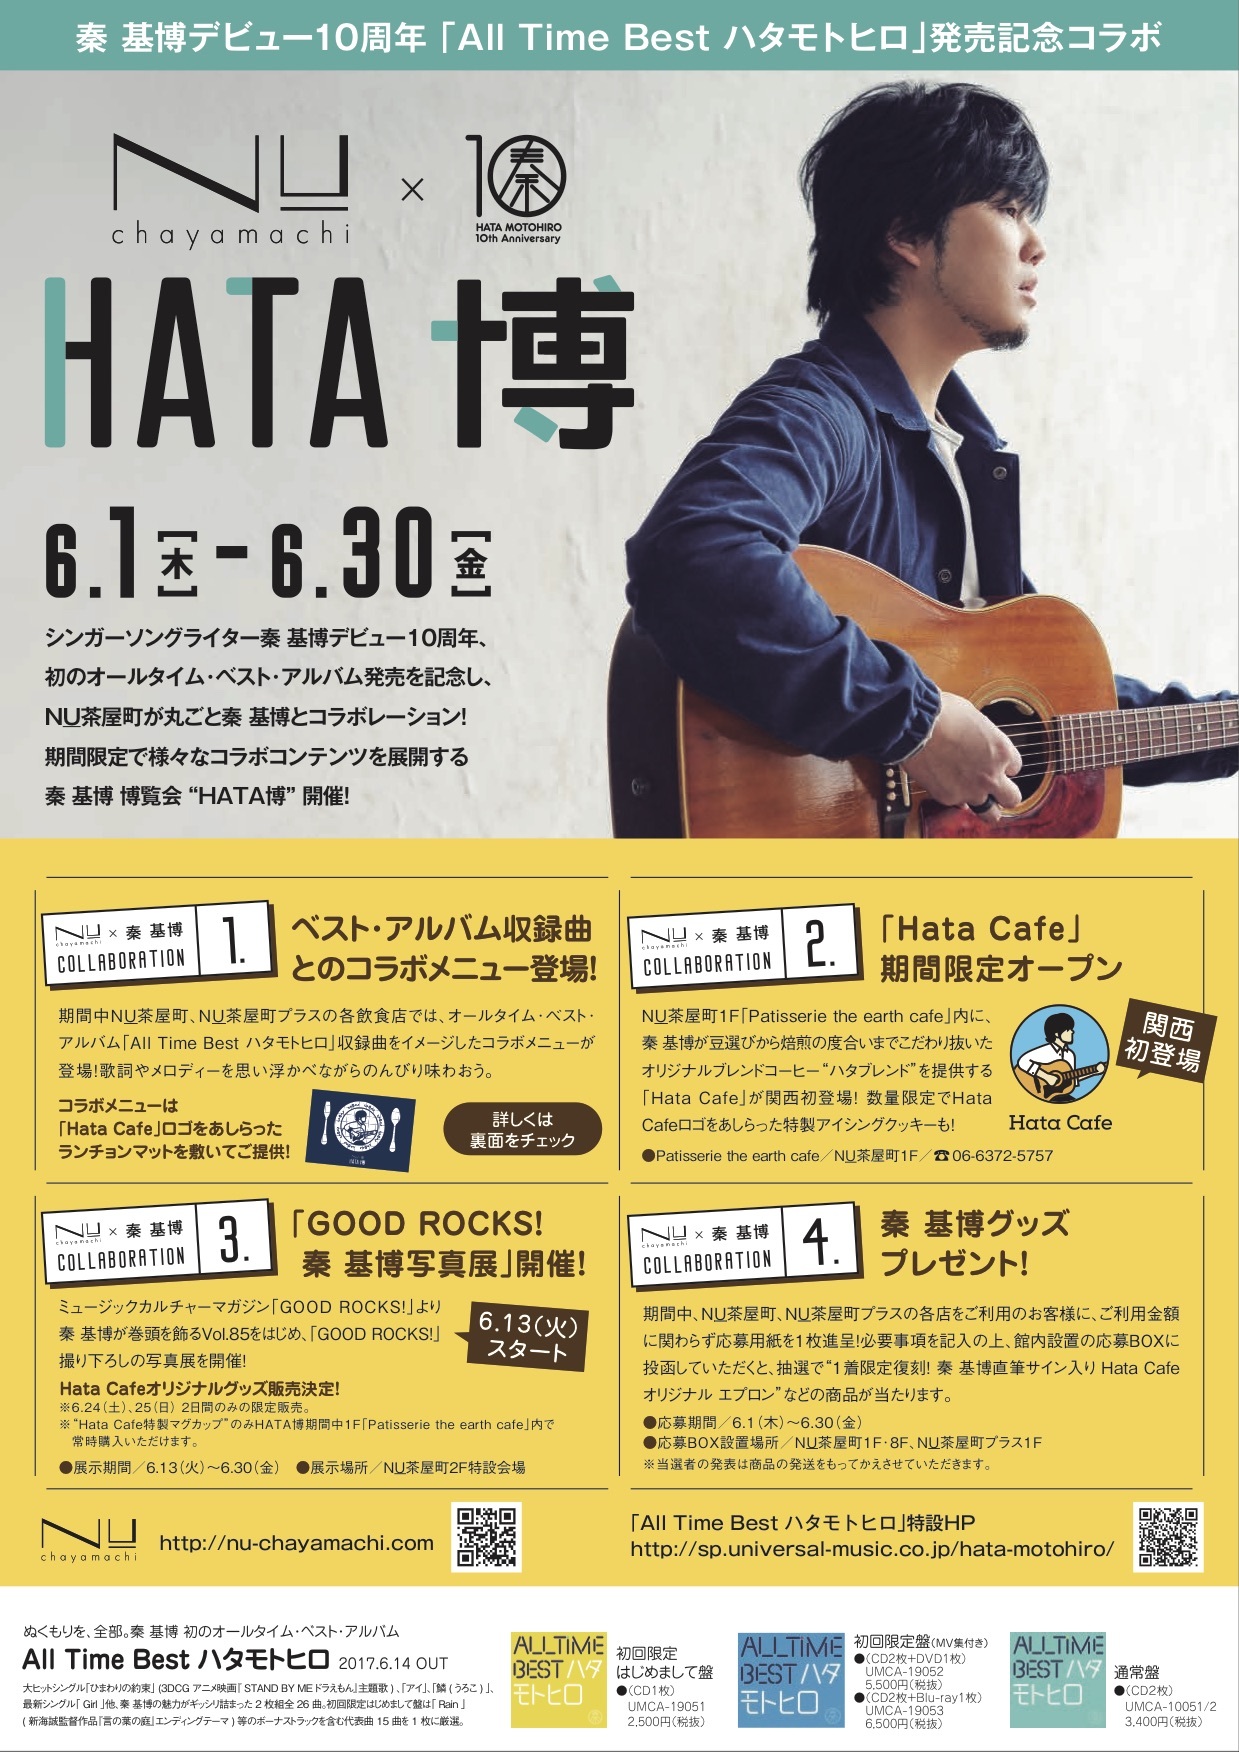 秦 基博 大阪 Nu茶屋町 コラボ企画 Hata博 を開催へ Hata Cafeでは曲にちなんだメニューも登場 Spice エンタメ特化型情報メディア スパイス